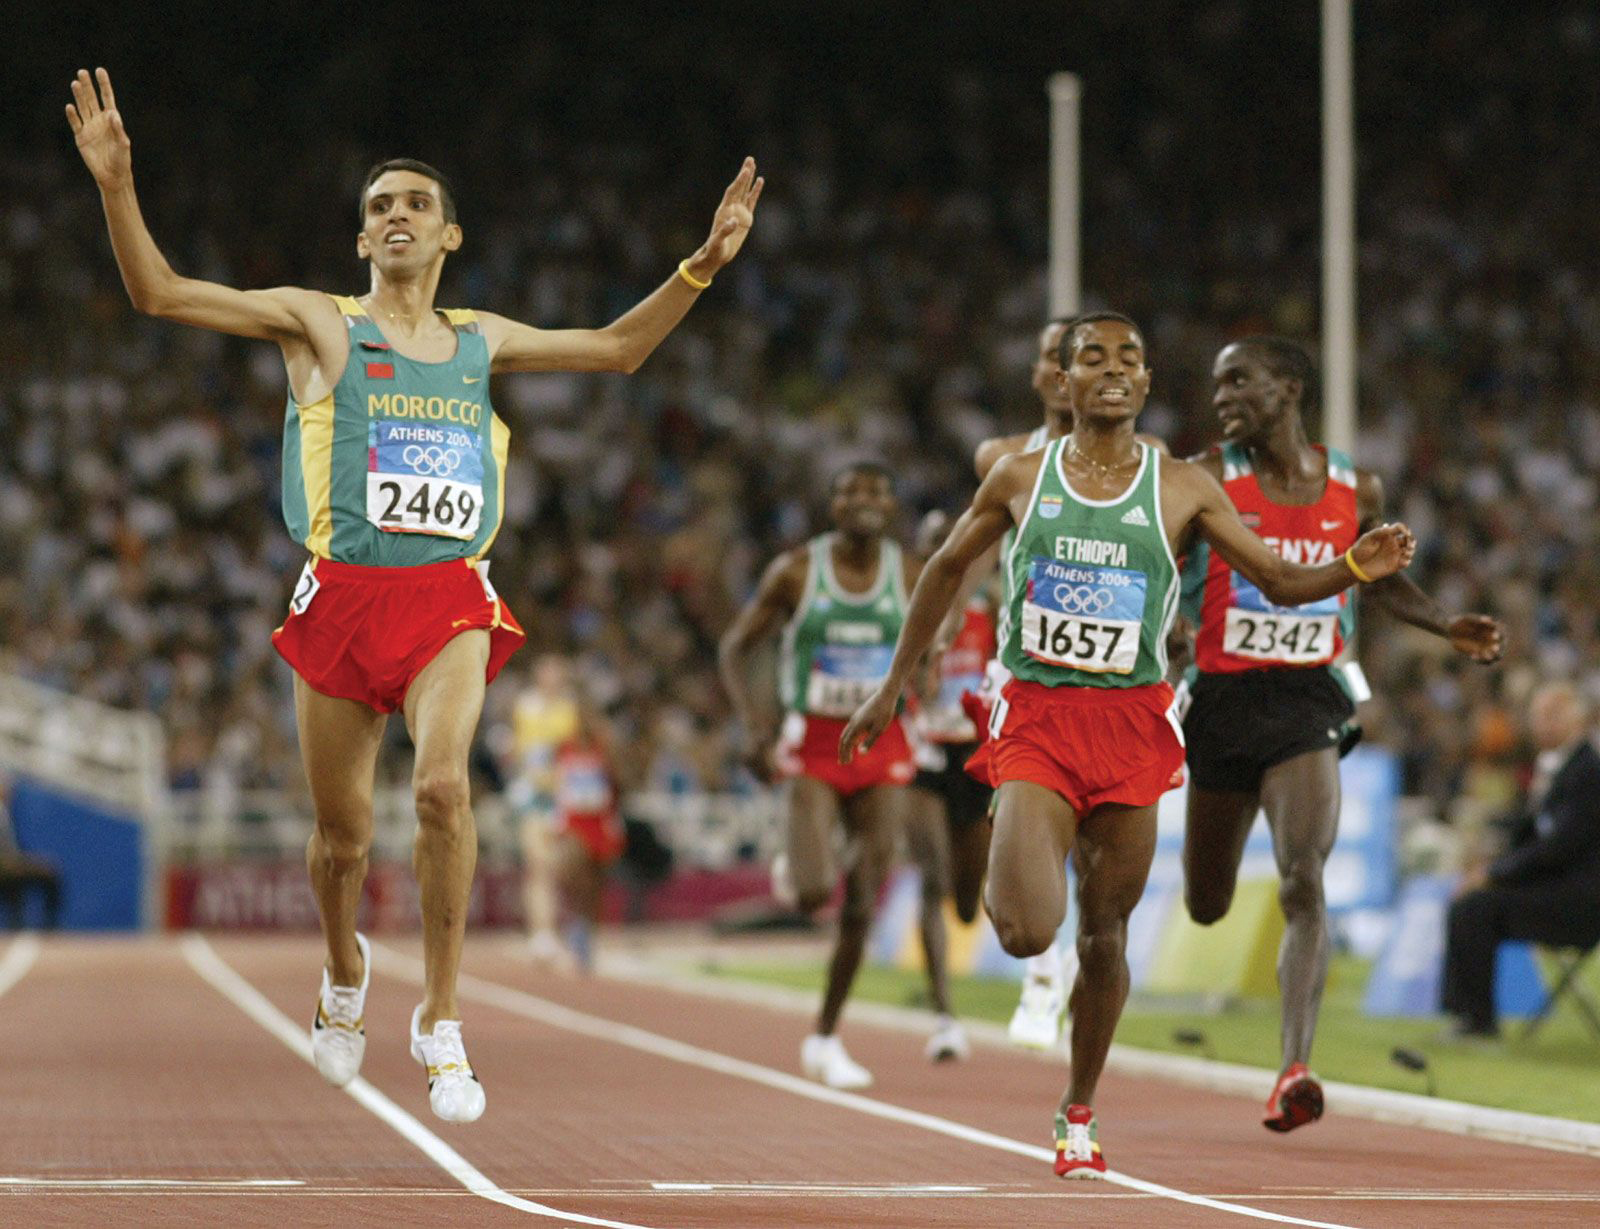 أولمبياد طوكيو: السجل الكامل للميداليات العربية في الألعاب الأولمبية عبر التاريخ